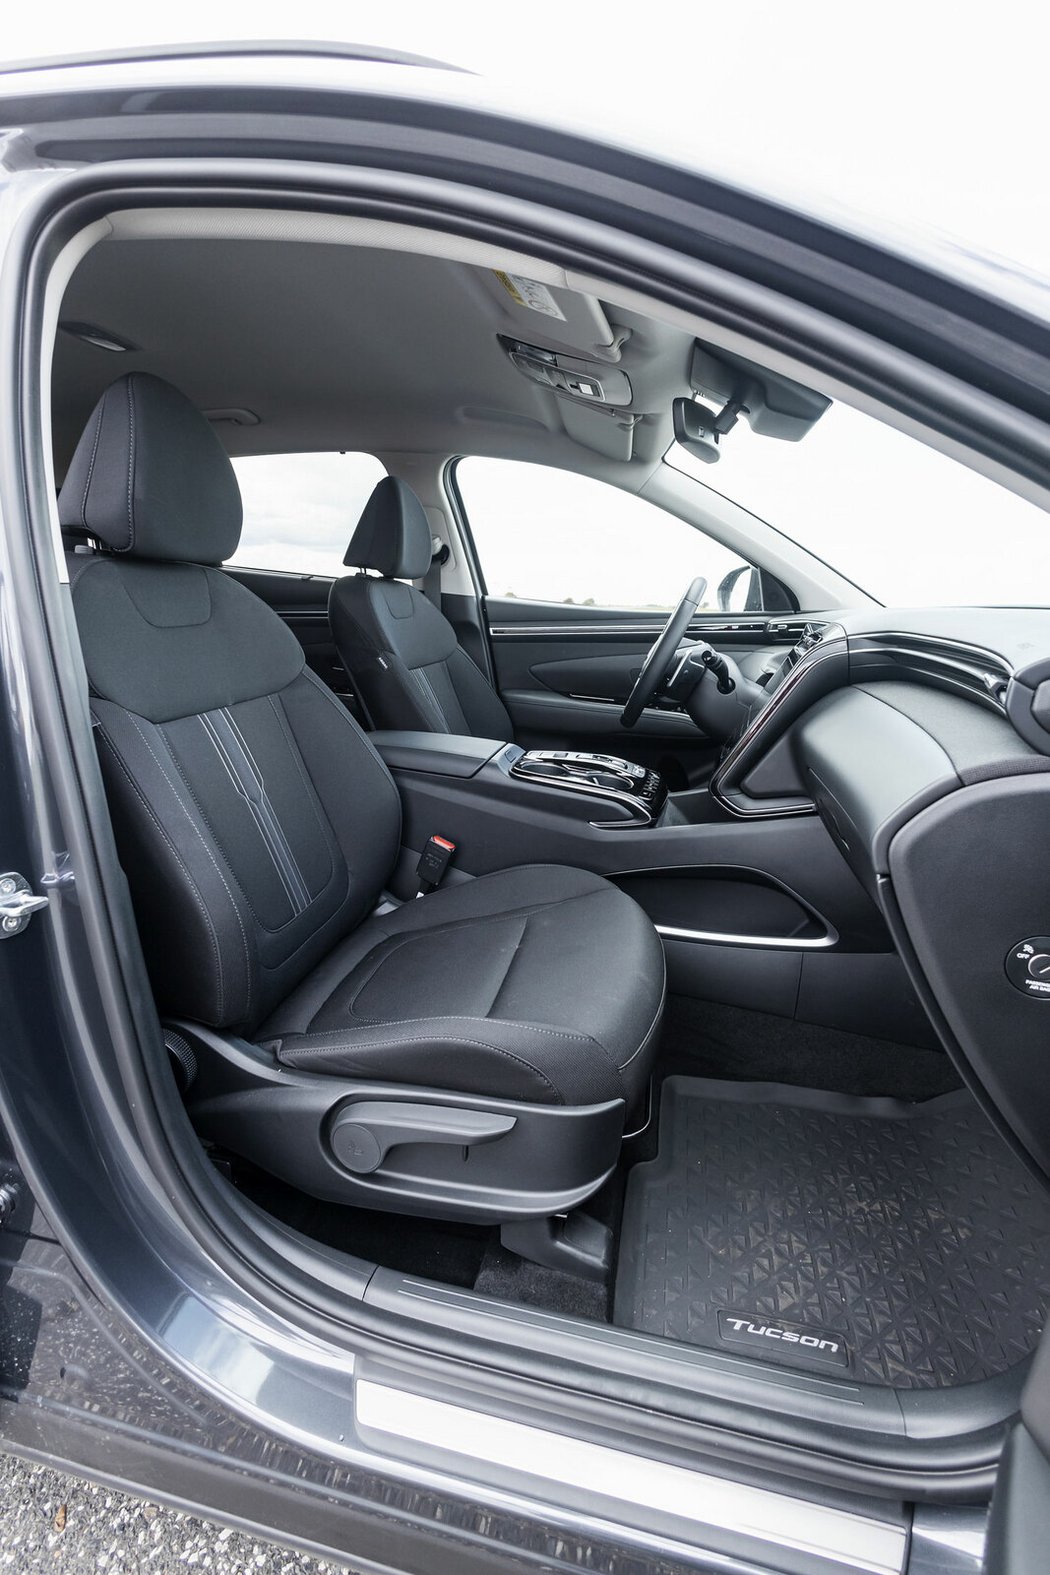 Hyundai Tucson patří k nejprostornějším vozům ve třídě, a to jak vepředu tak i vzadu. Dobré jsou i sedačky se slušným komfortem i bočním vedením.